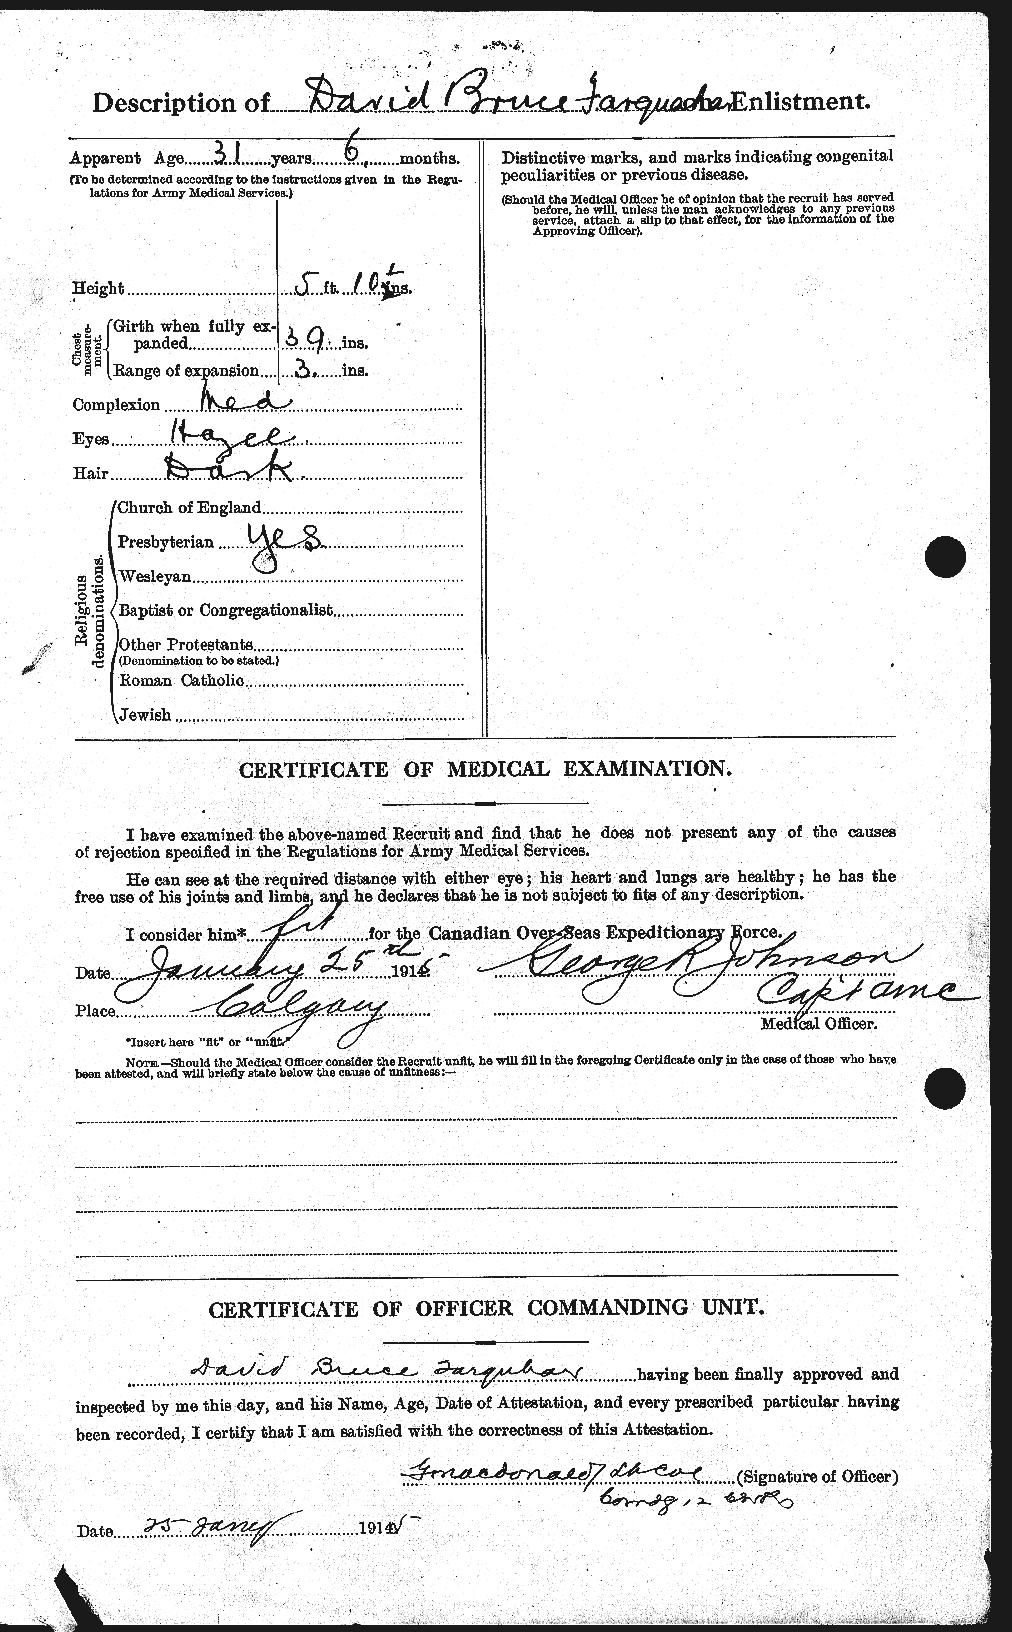 Dossiers du Personnel de la Première Guerre mondiale - CEC 318767b